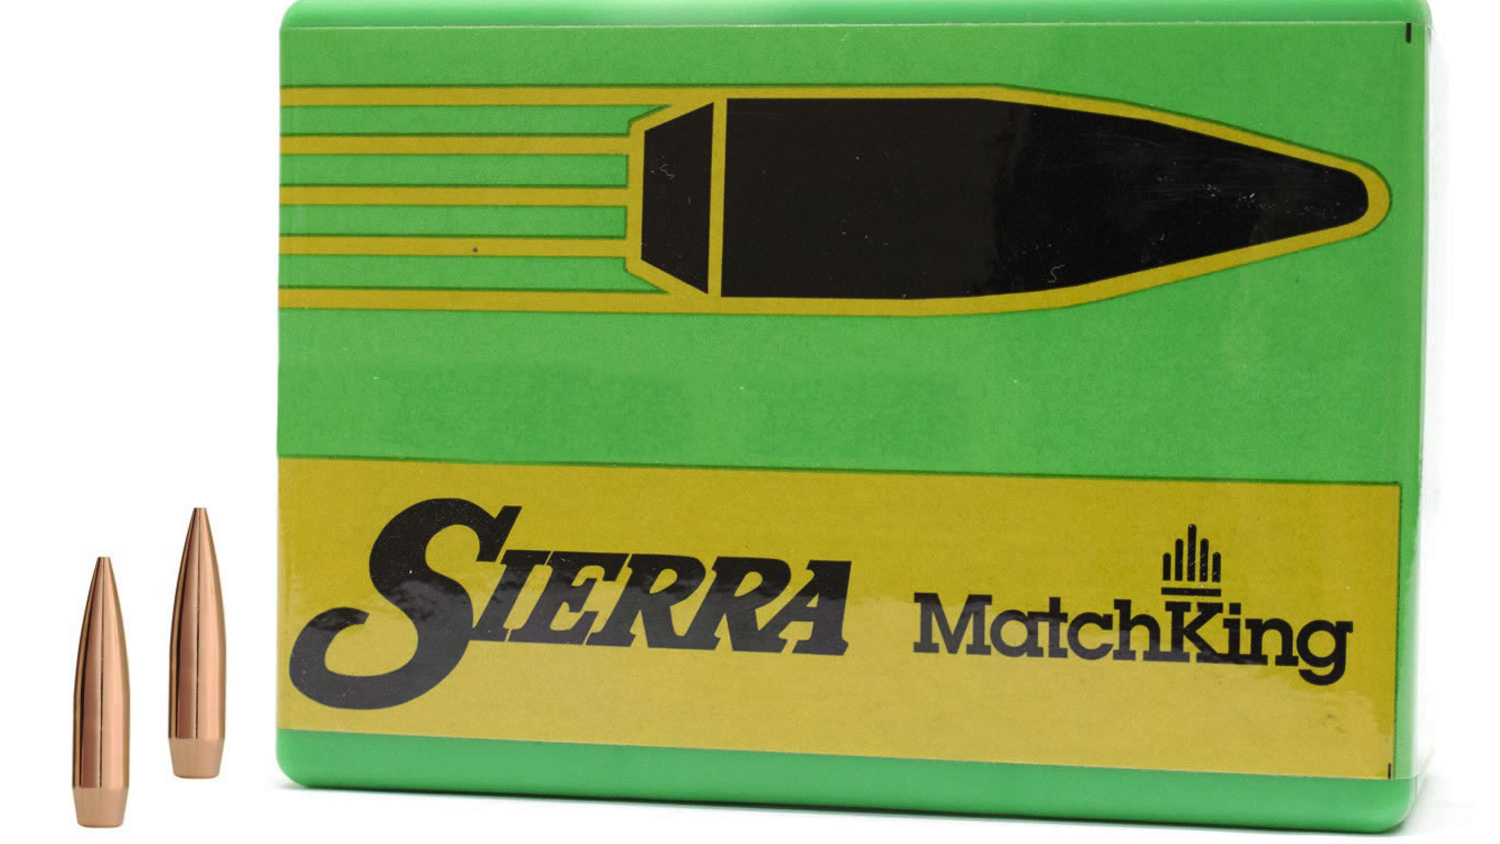 Sierra MatchKing HPBT bullets